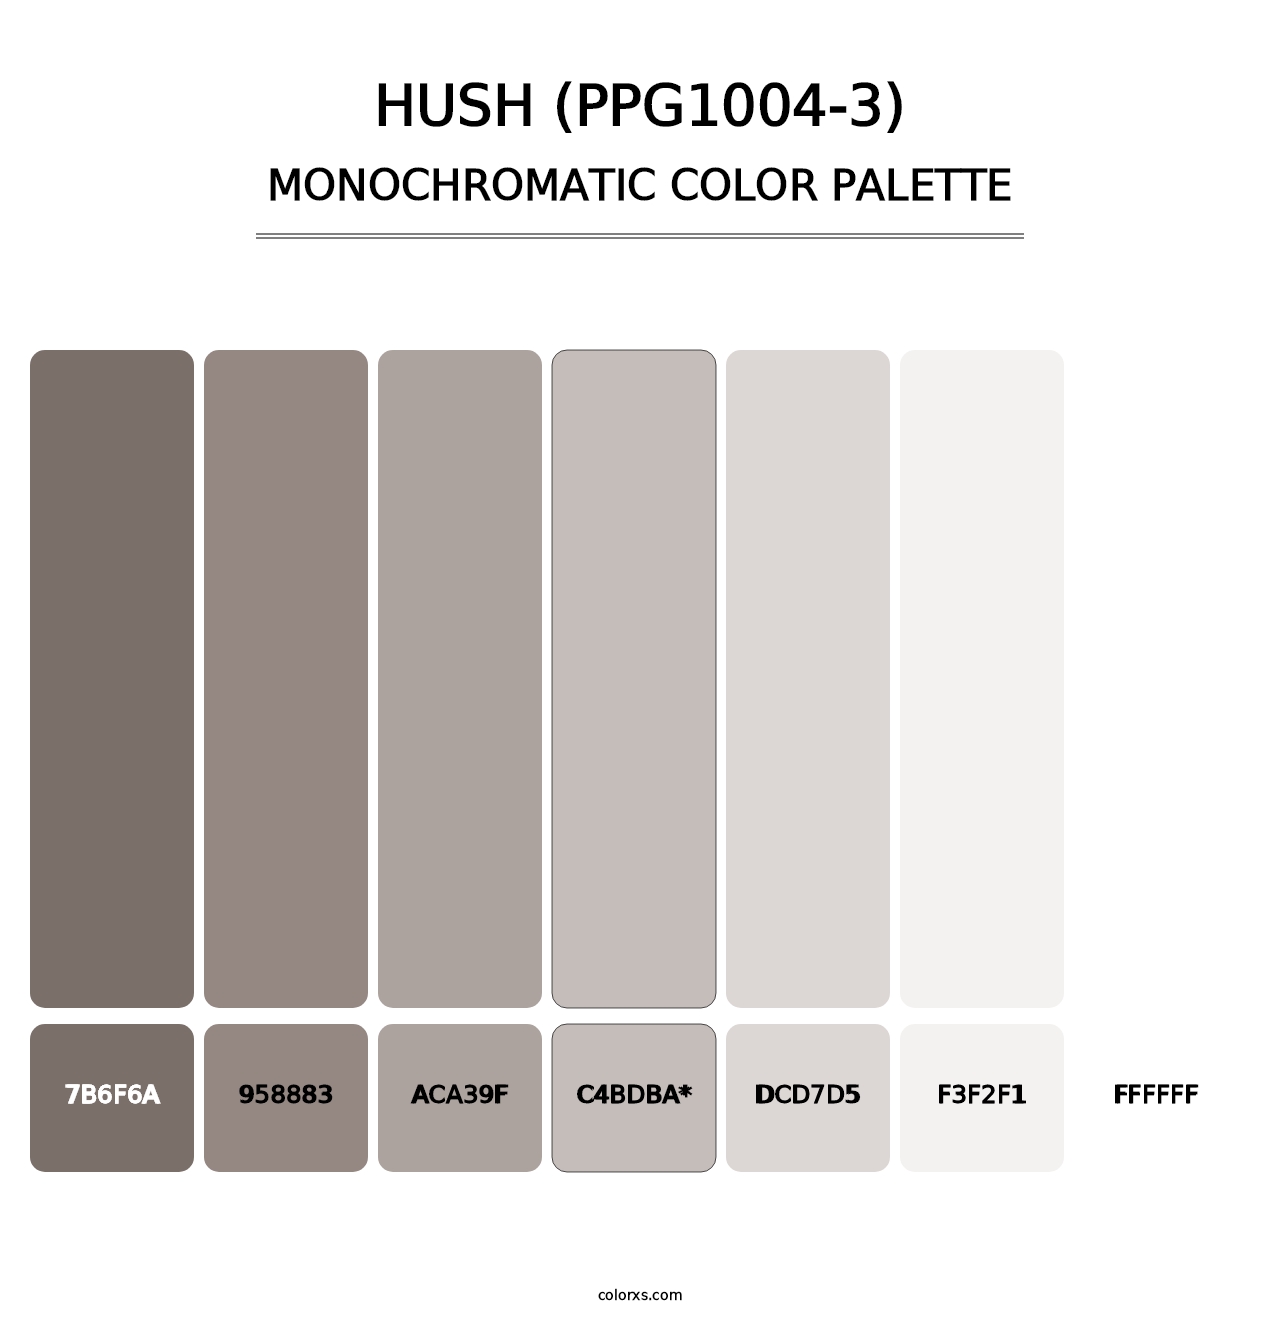 Hush (PPG1004-3) - Monochromatic Color Palette